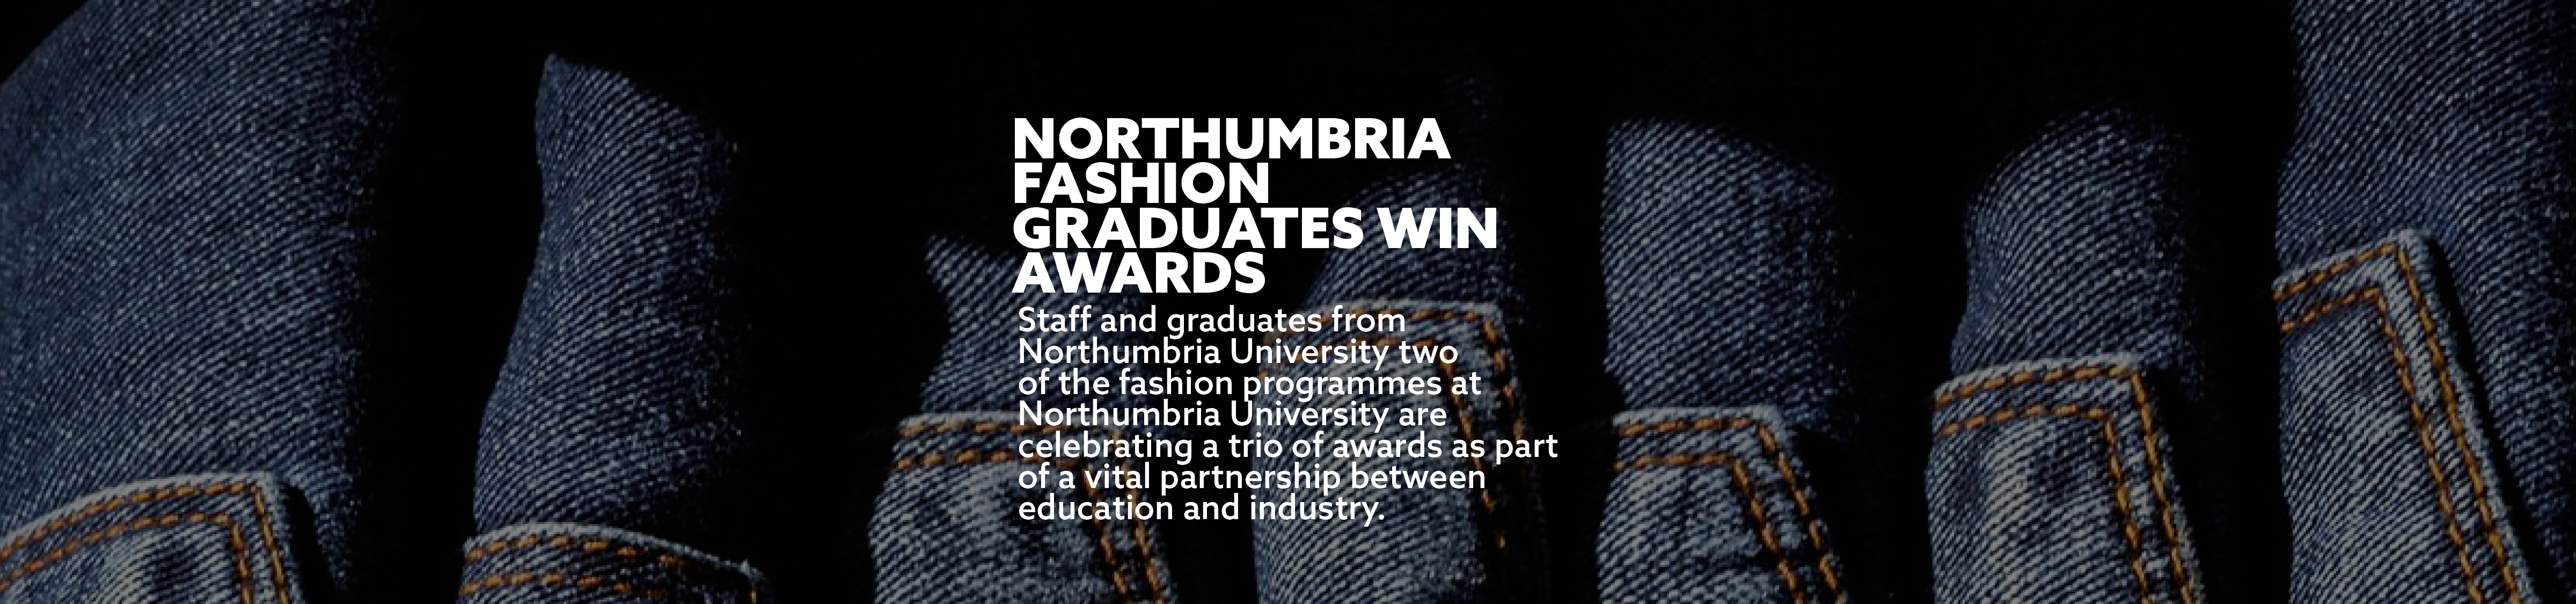 Northumbria fashion graduates win awards